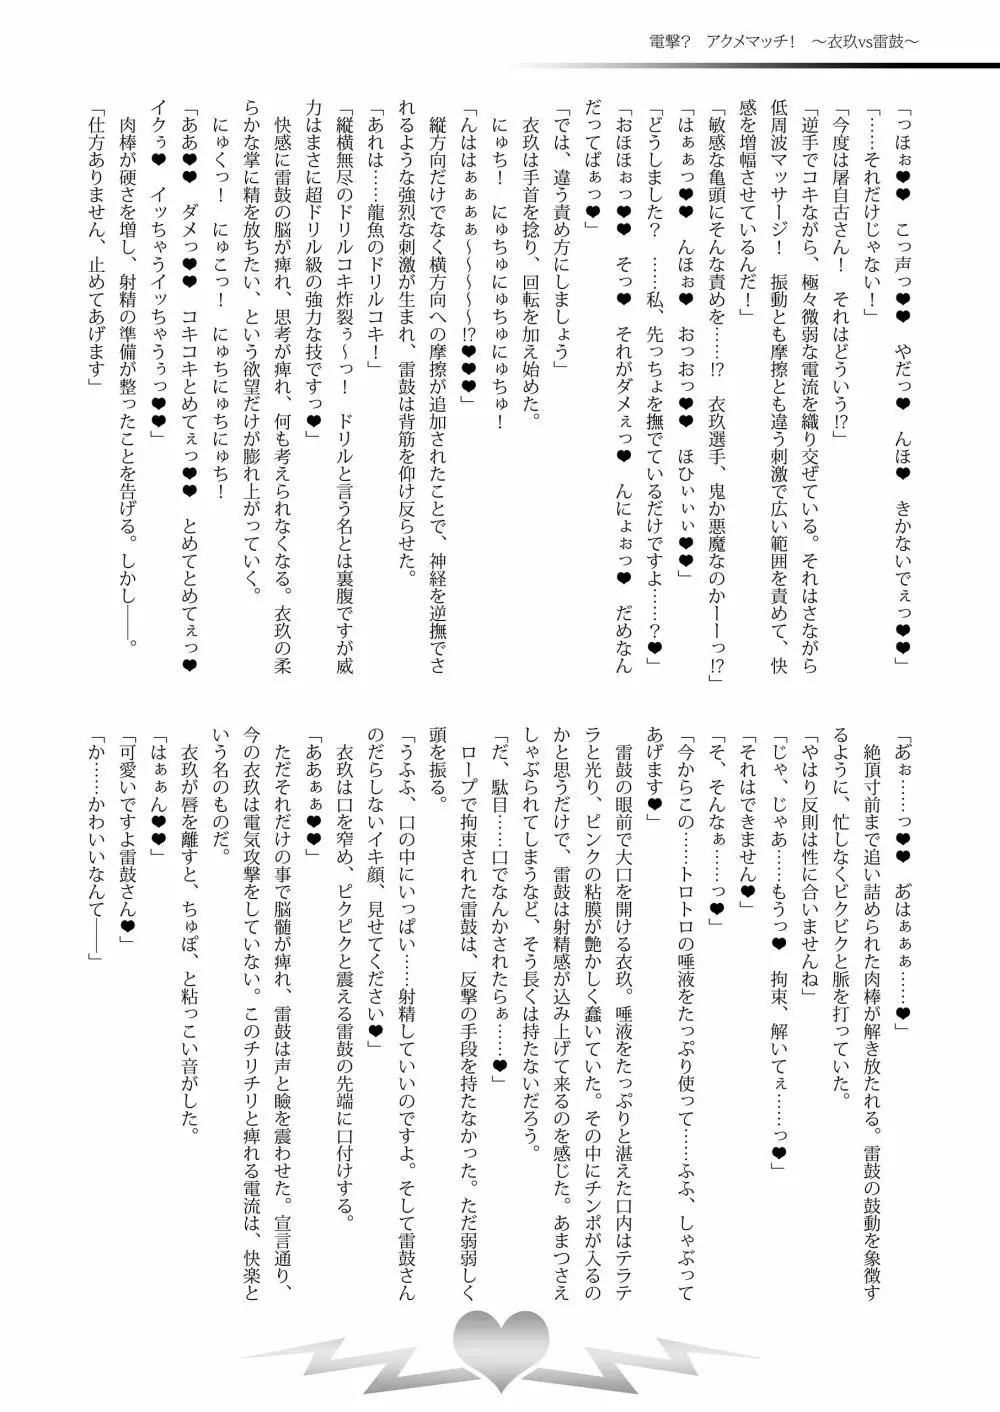 幻想郷フタナリチンポレスリング合同誌2 GFCW Extreme Joker 220ページ